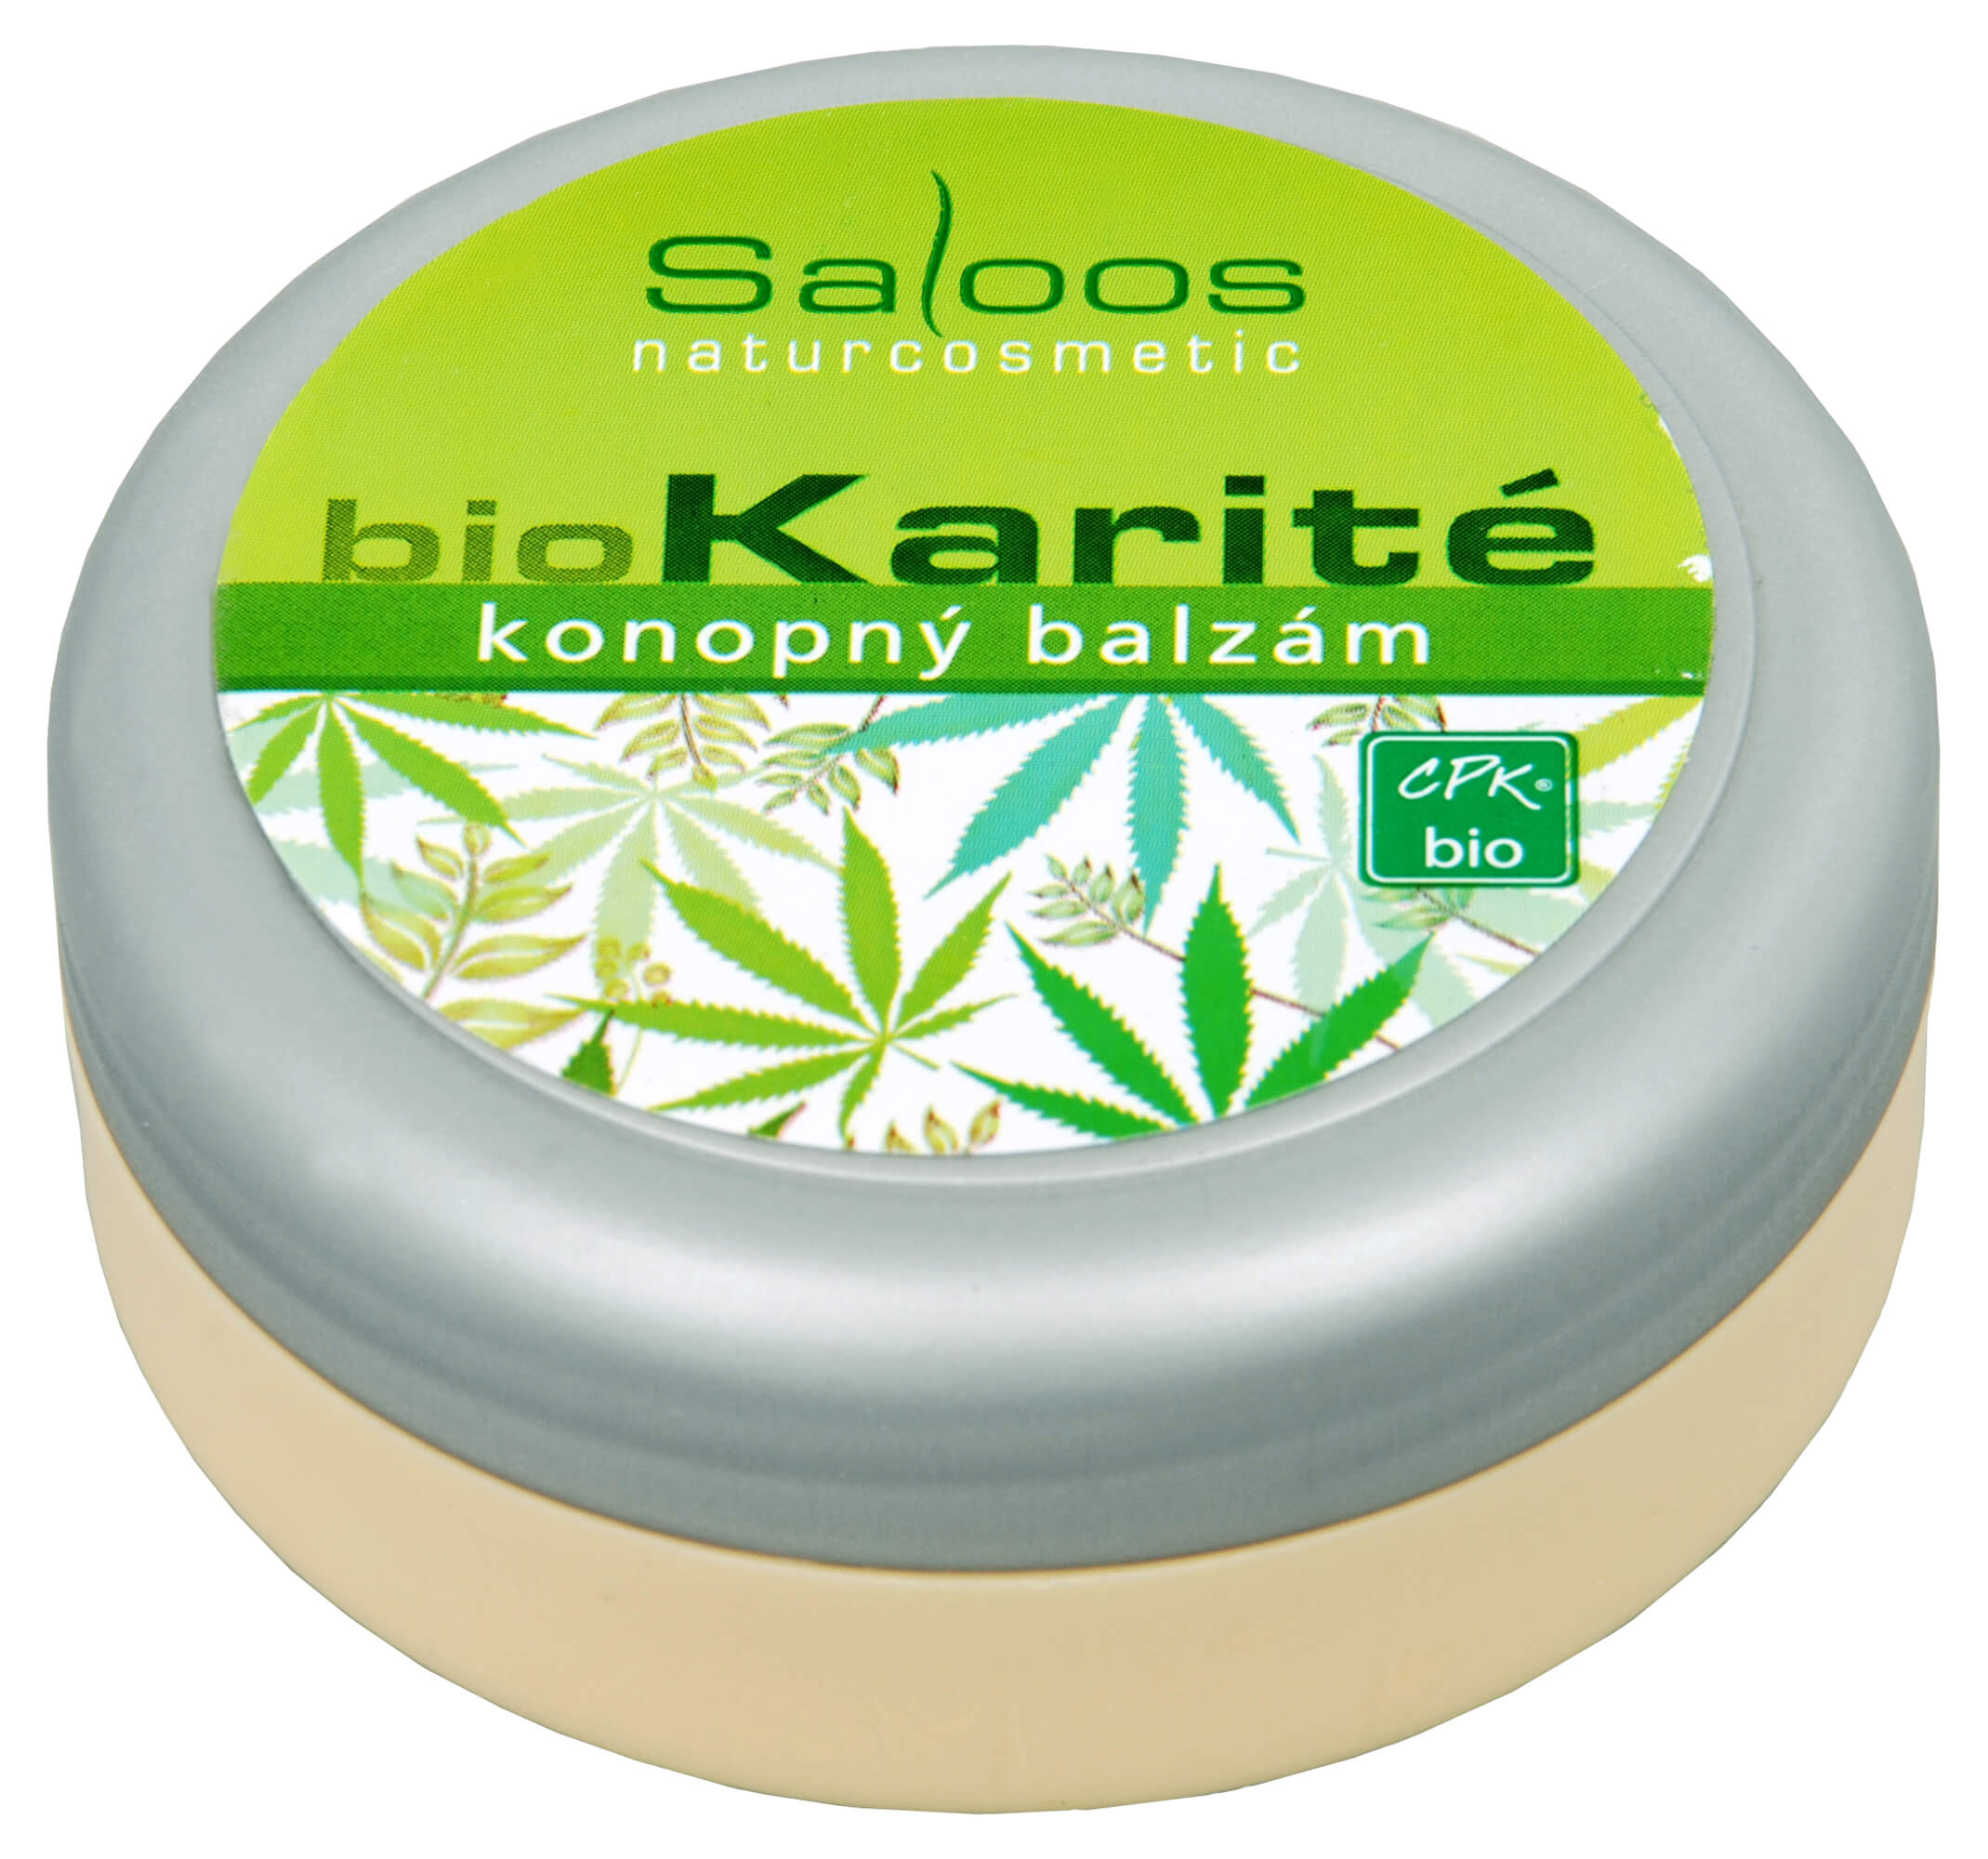 Zobrazit detail výrobku Saloos Bio Karité balzám - Konopný 50 ml + 2 měsíce na vrácení zboží